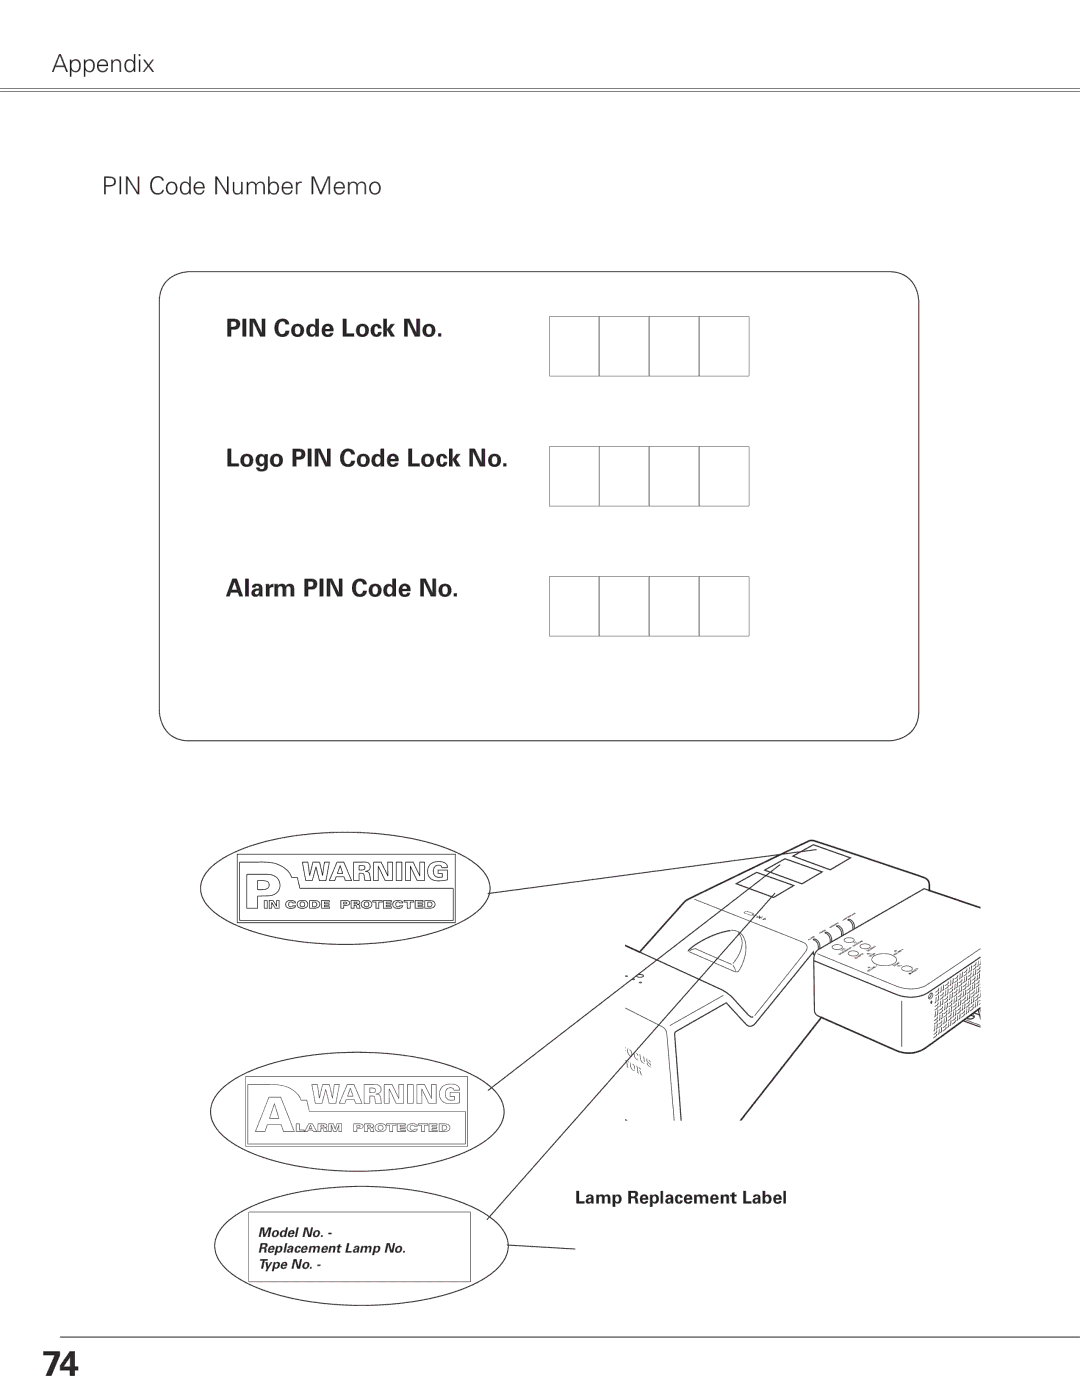 Sanyo PLC-XL50 owner manual Appendix PIN Code Number Memo, Lamp Replacement Label 